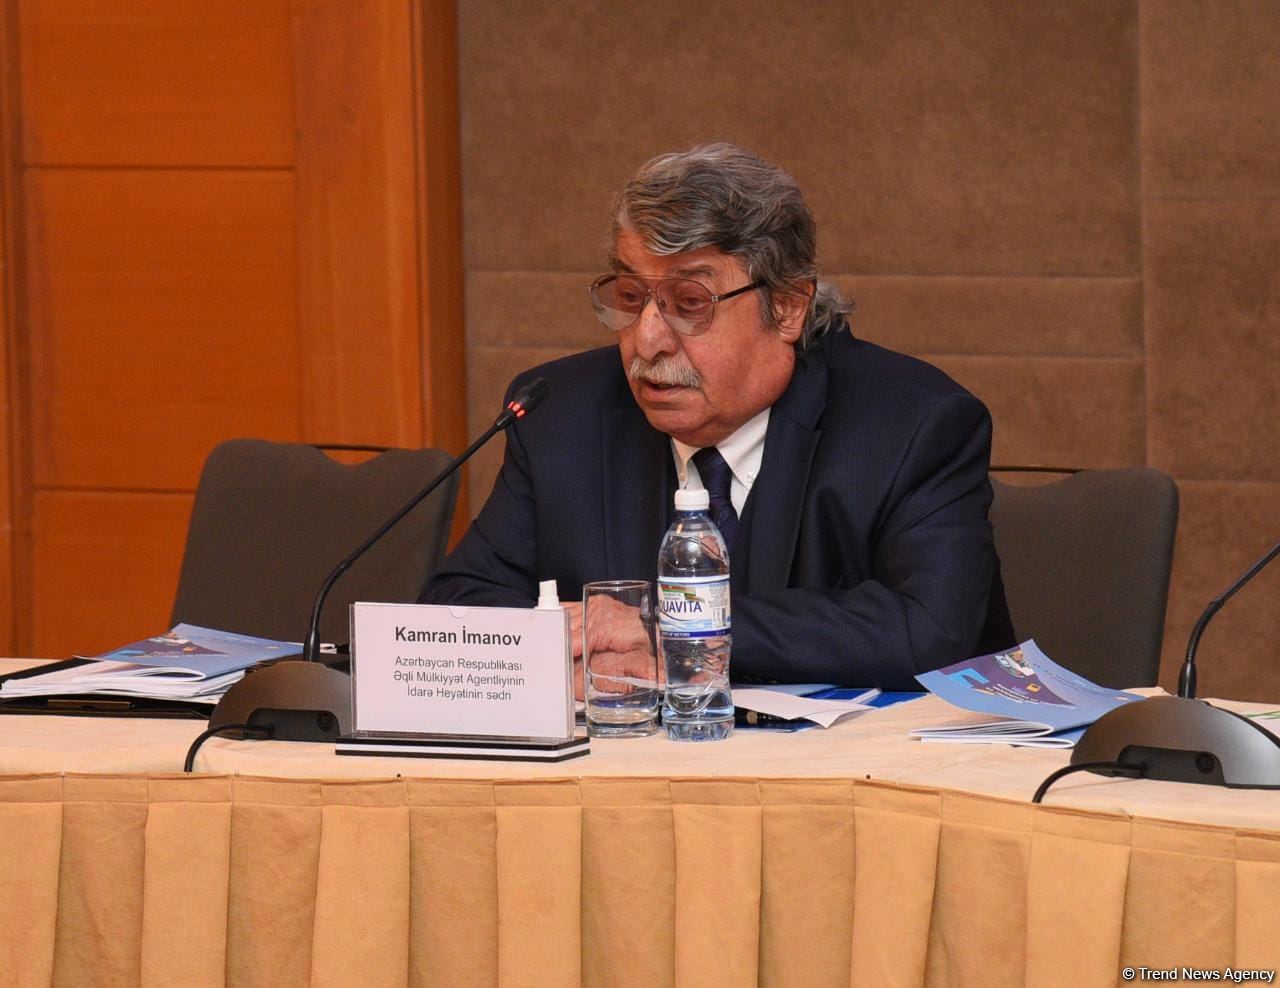 Азербайджан занимает 1-е место в СНГ по показателю защиты интеллектуальной собственности - Камран Иманов